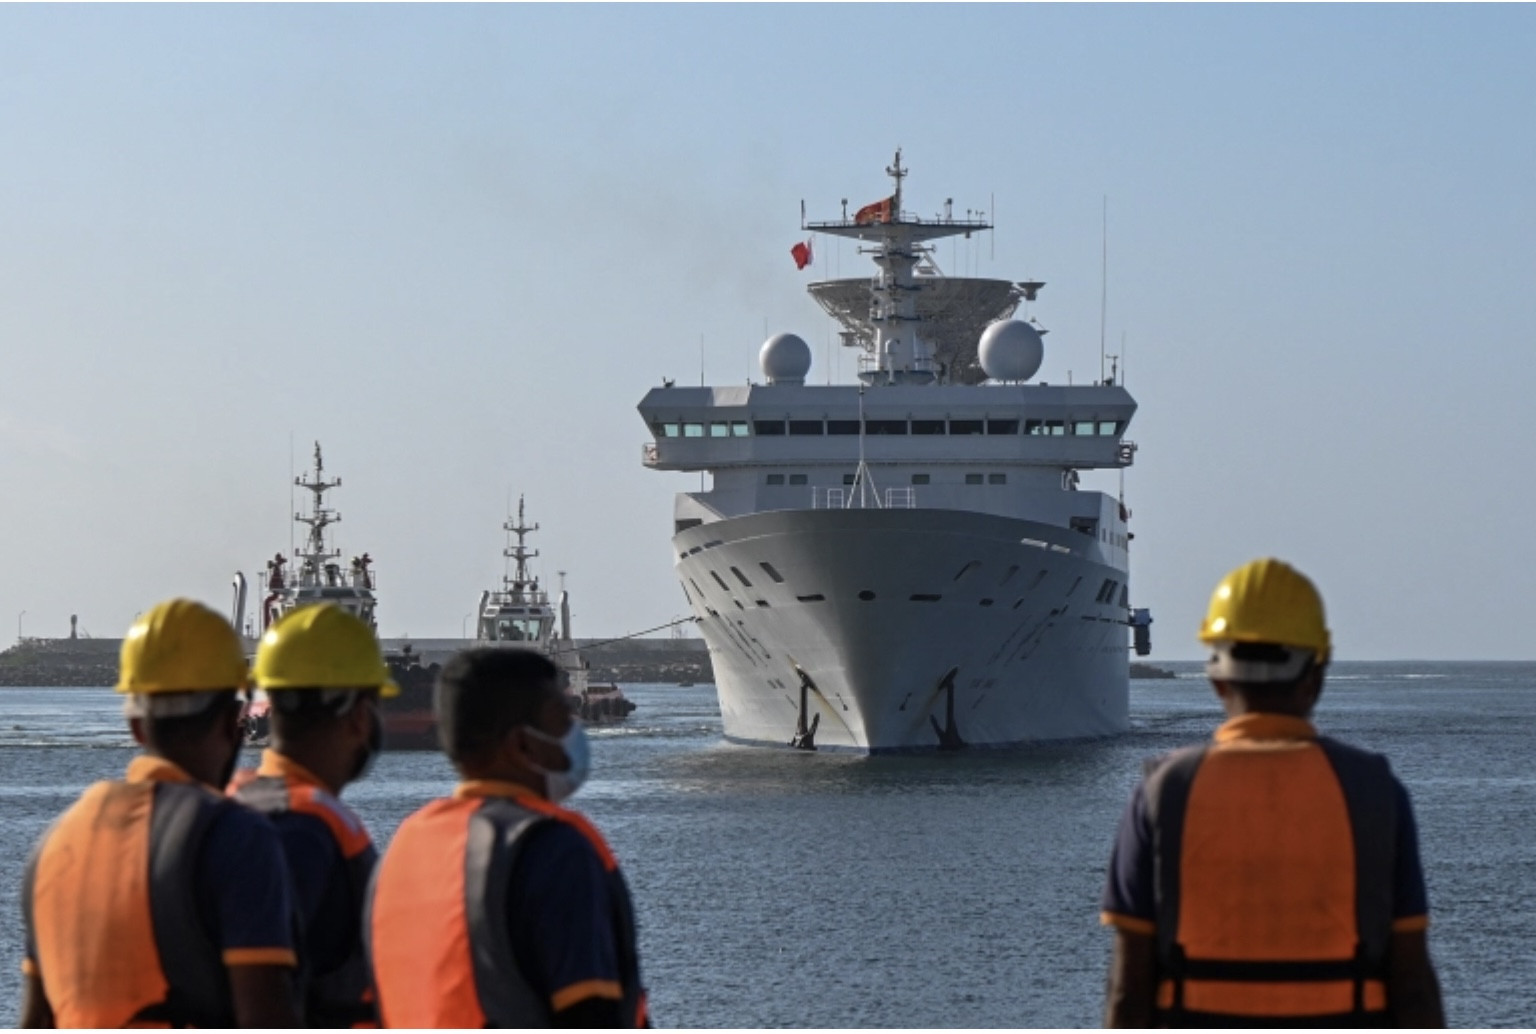 Sau nhiều bế tắc, tàu khảo sát quân sự Trung Quốc cập cảng Sri Lanka